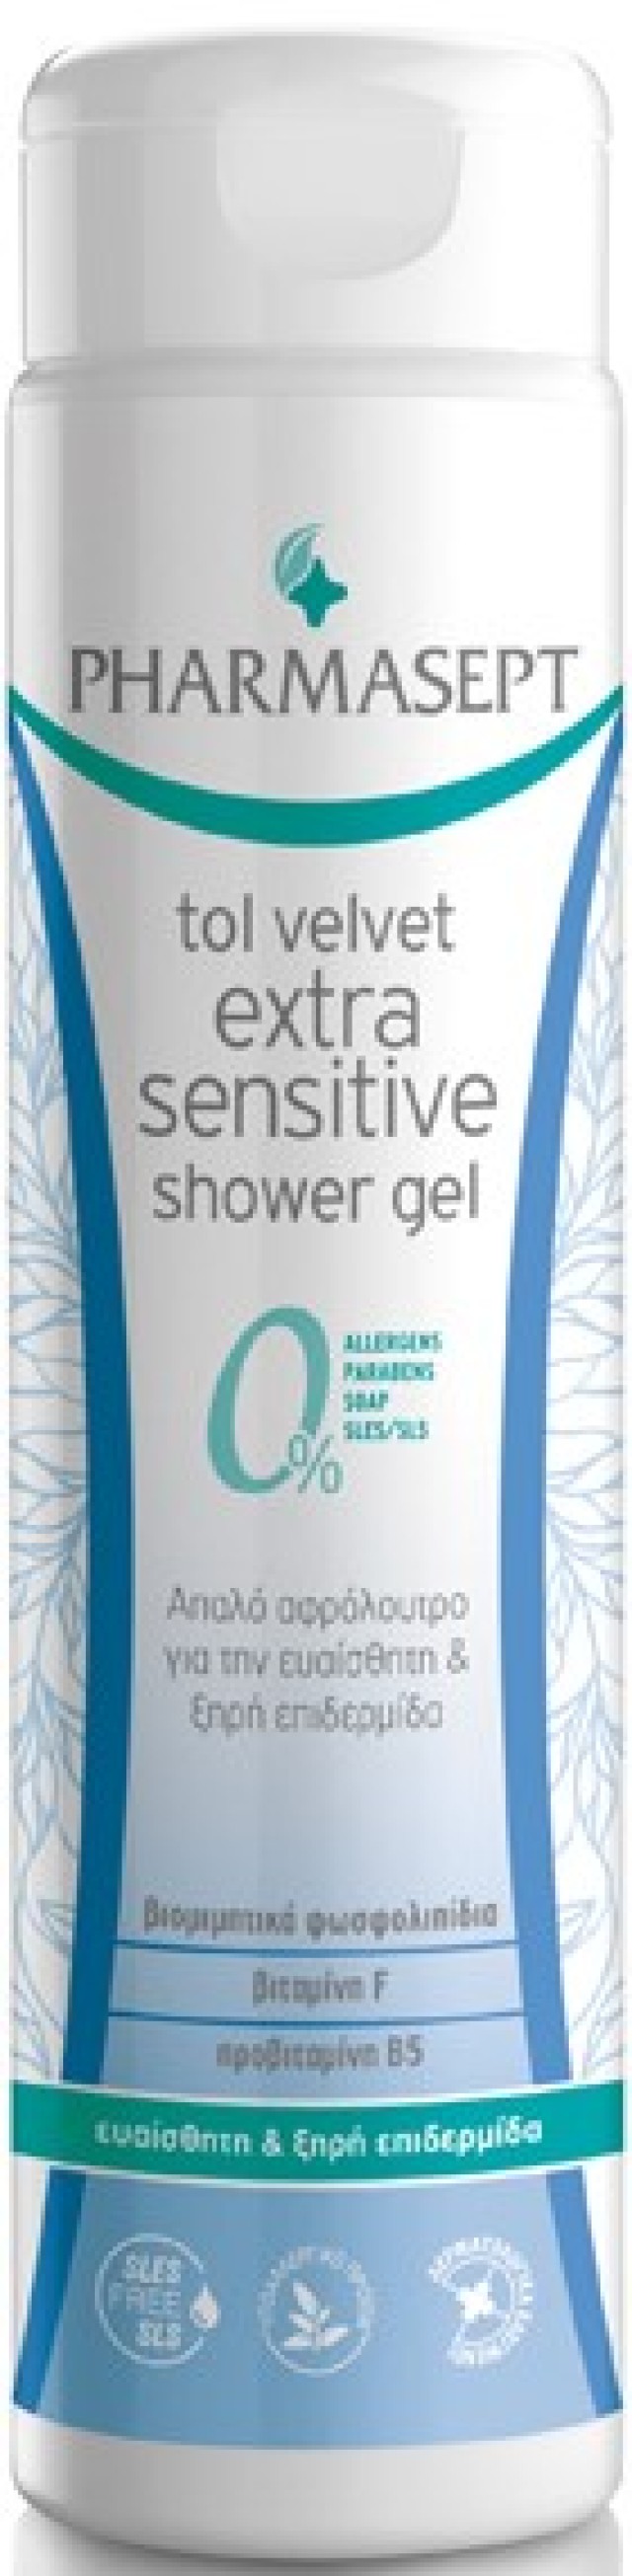 Pharmasept Extra Sensitive Shower Gel 300ml